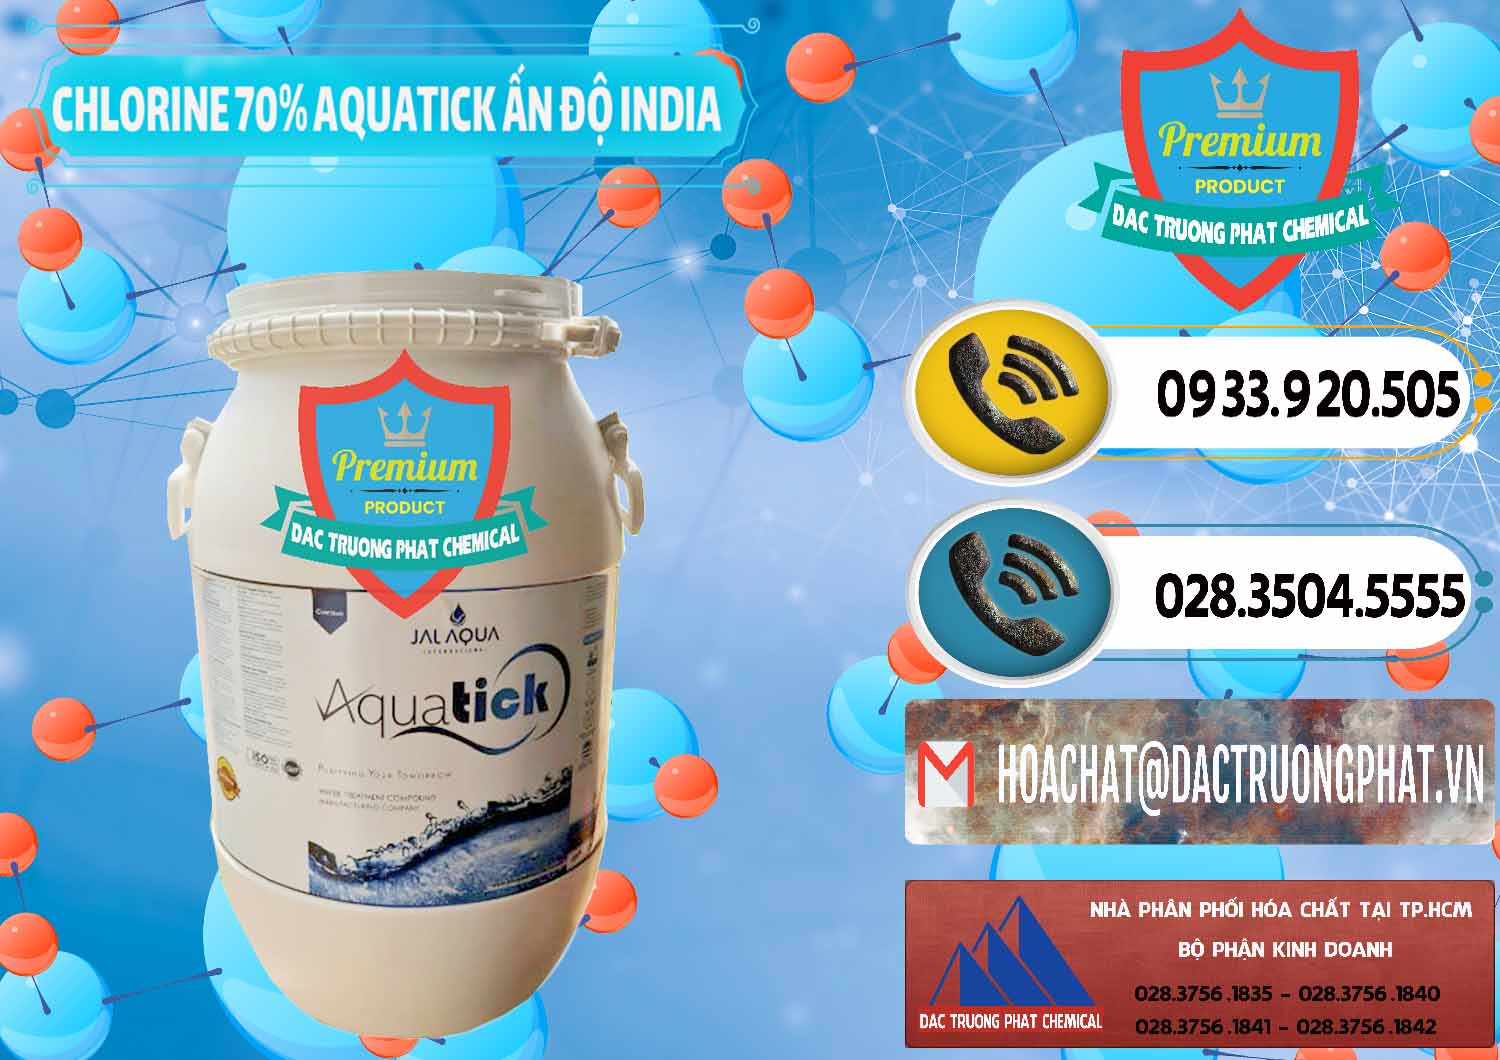 Cty bán và cung ứng Chlorine – Clorin 70% Aquatick Jal Aqua Ấn Độ India - 0215 - Cung cấp - phân phối hóa chất tại TP.HCM - hoachatdetnhuom.vn